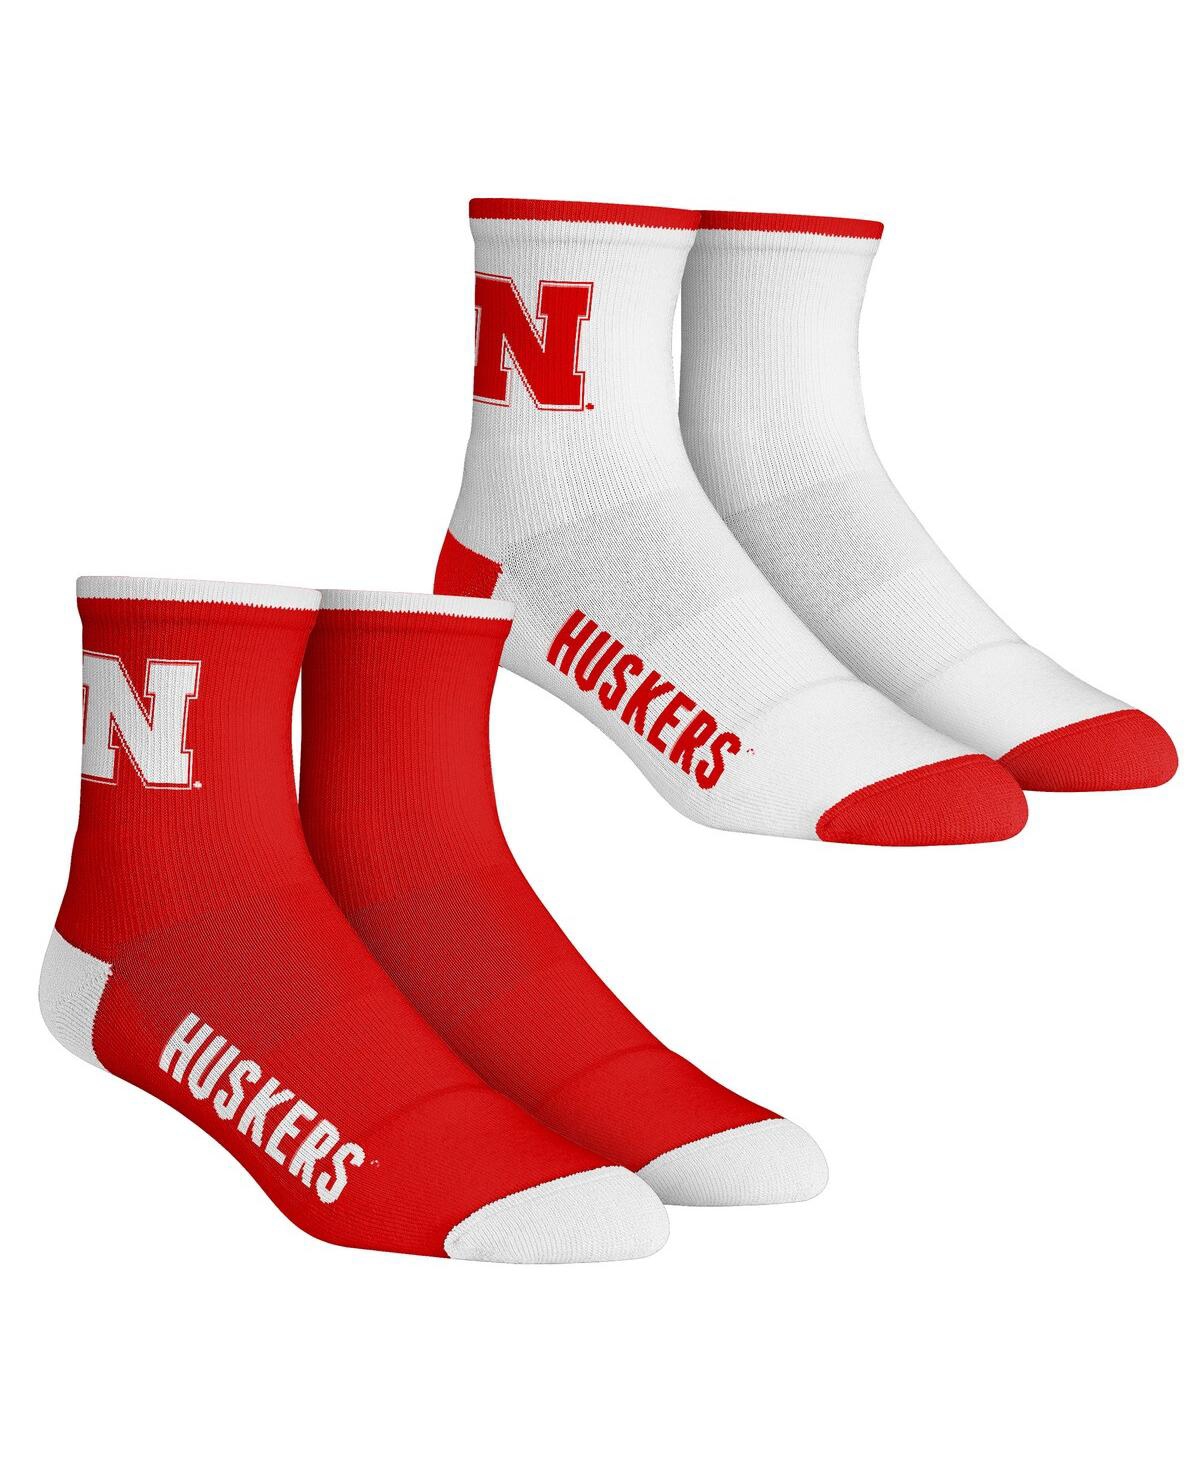 Rock 'em Kids' Youth Boys And Girls  Socks Nebraska Huskers Core Team 2-pack Quarter Length Sock Set In Red,white